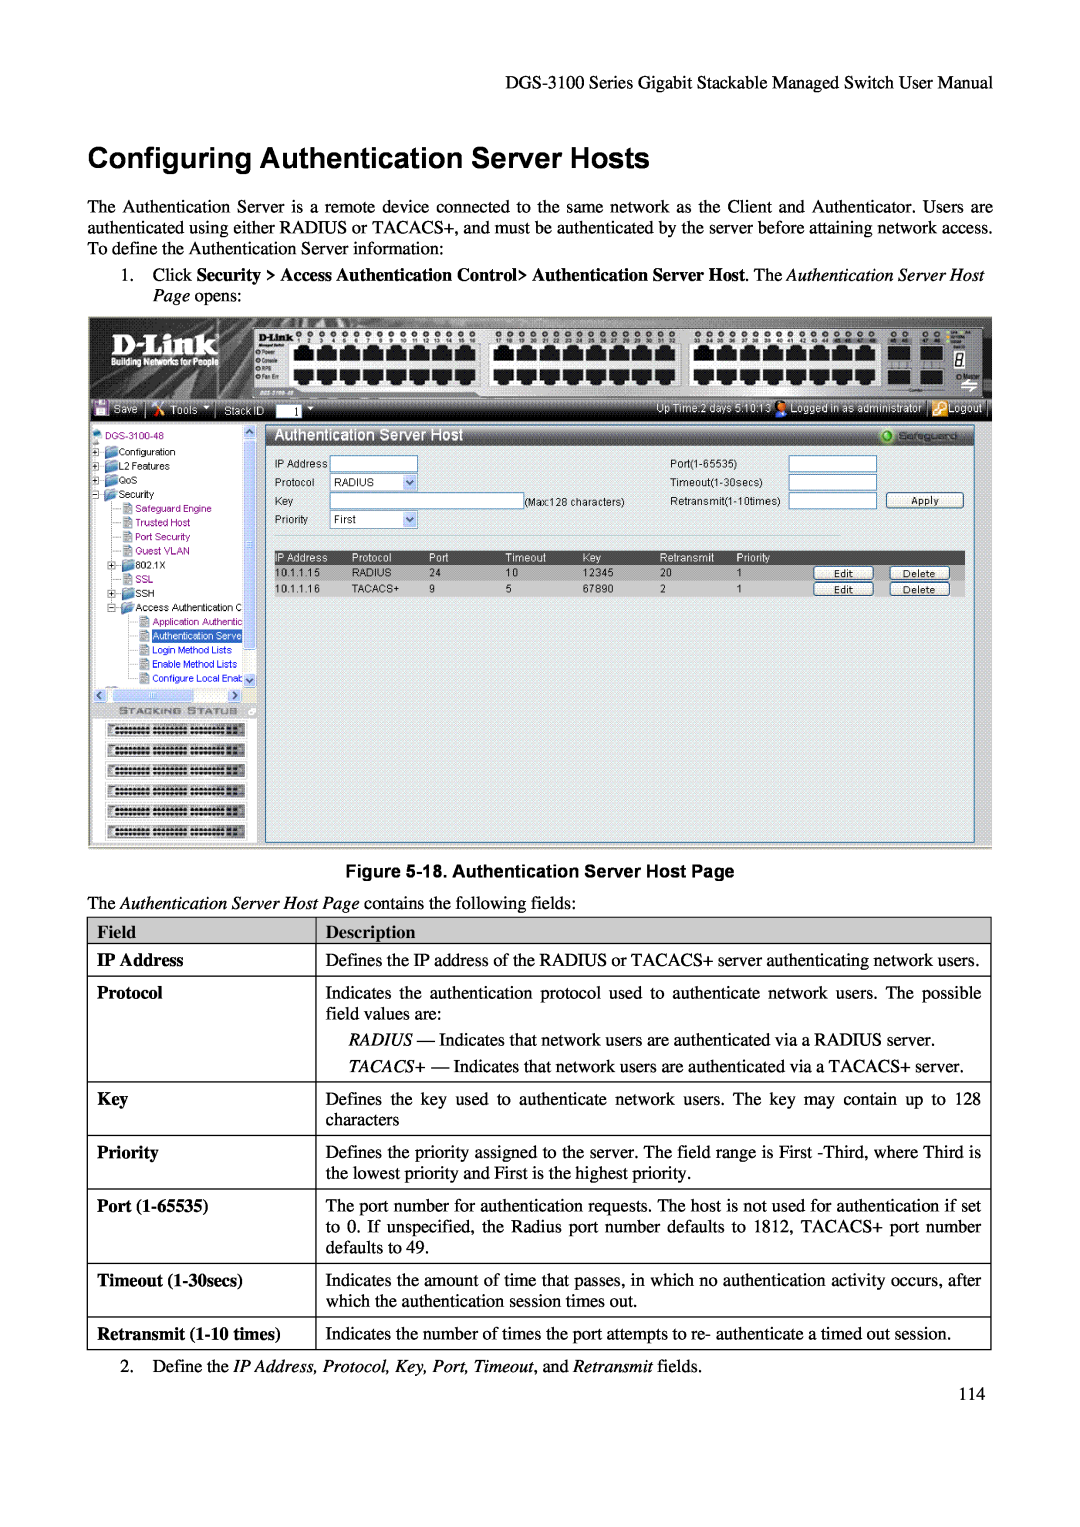 D-Link DGS-3100 Configuring Authentication Server Hosts, 18. Authentication Server Host Page, Field, Description, Protocol 